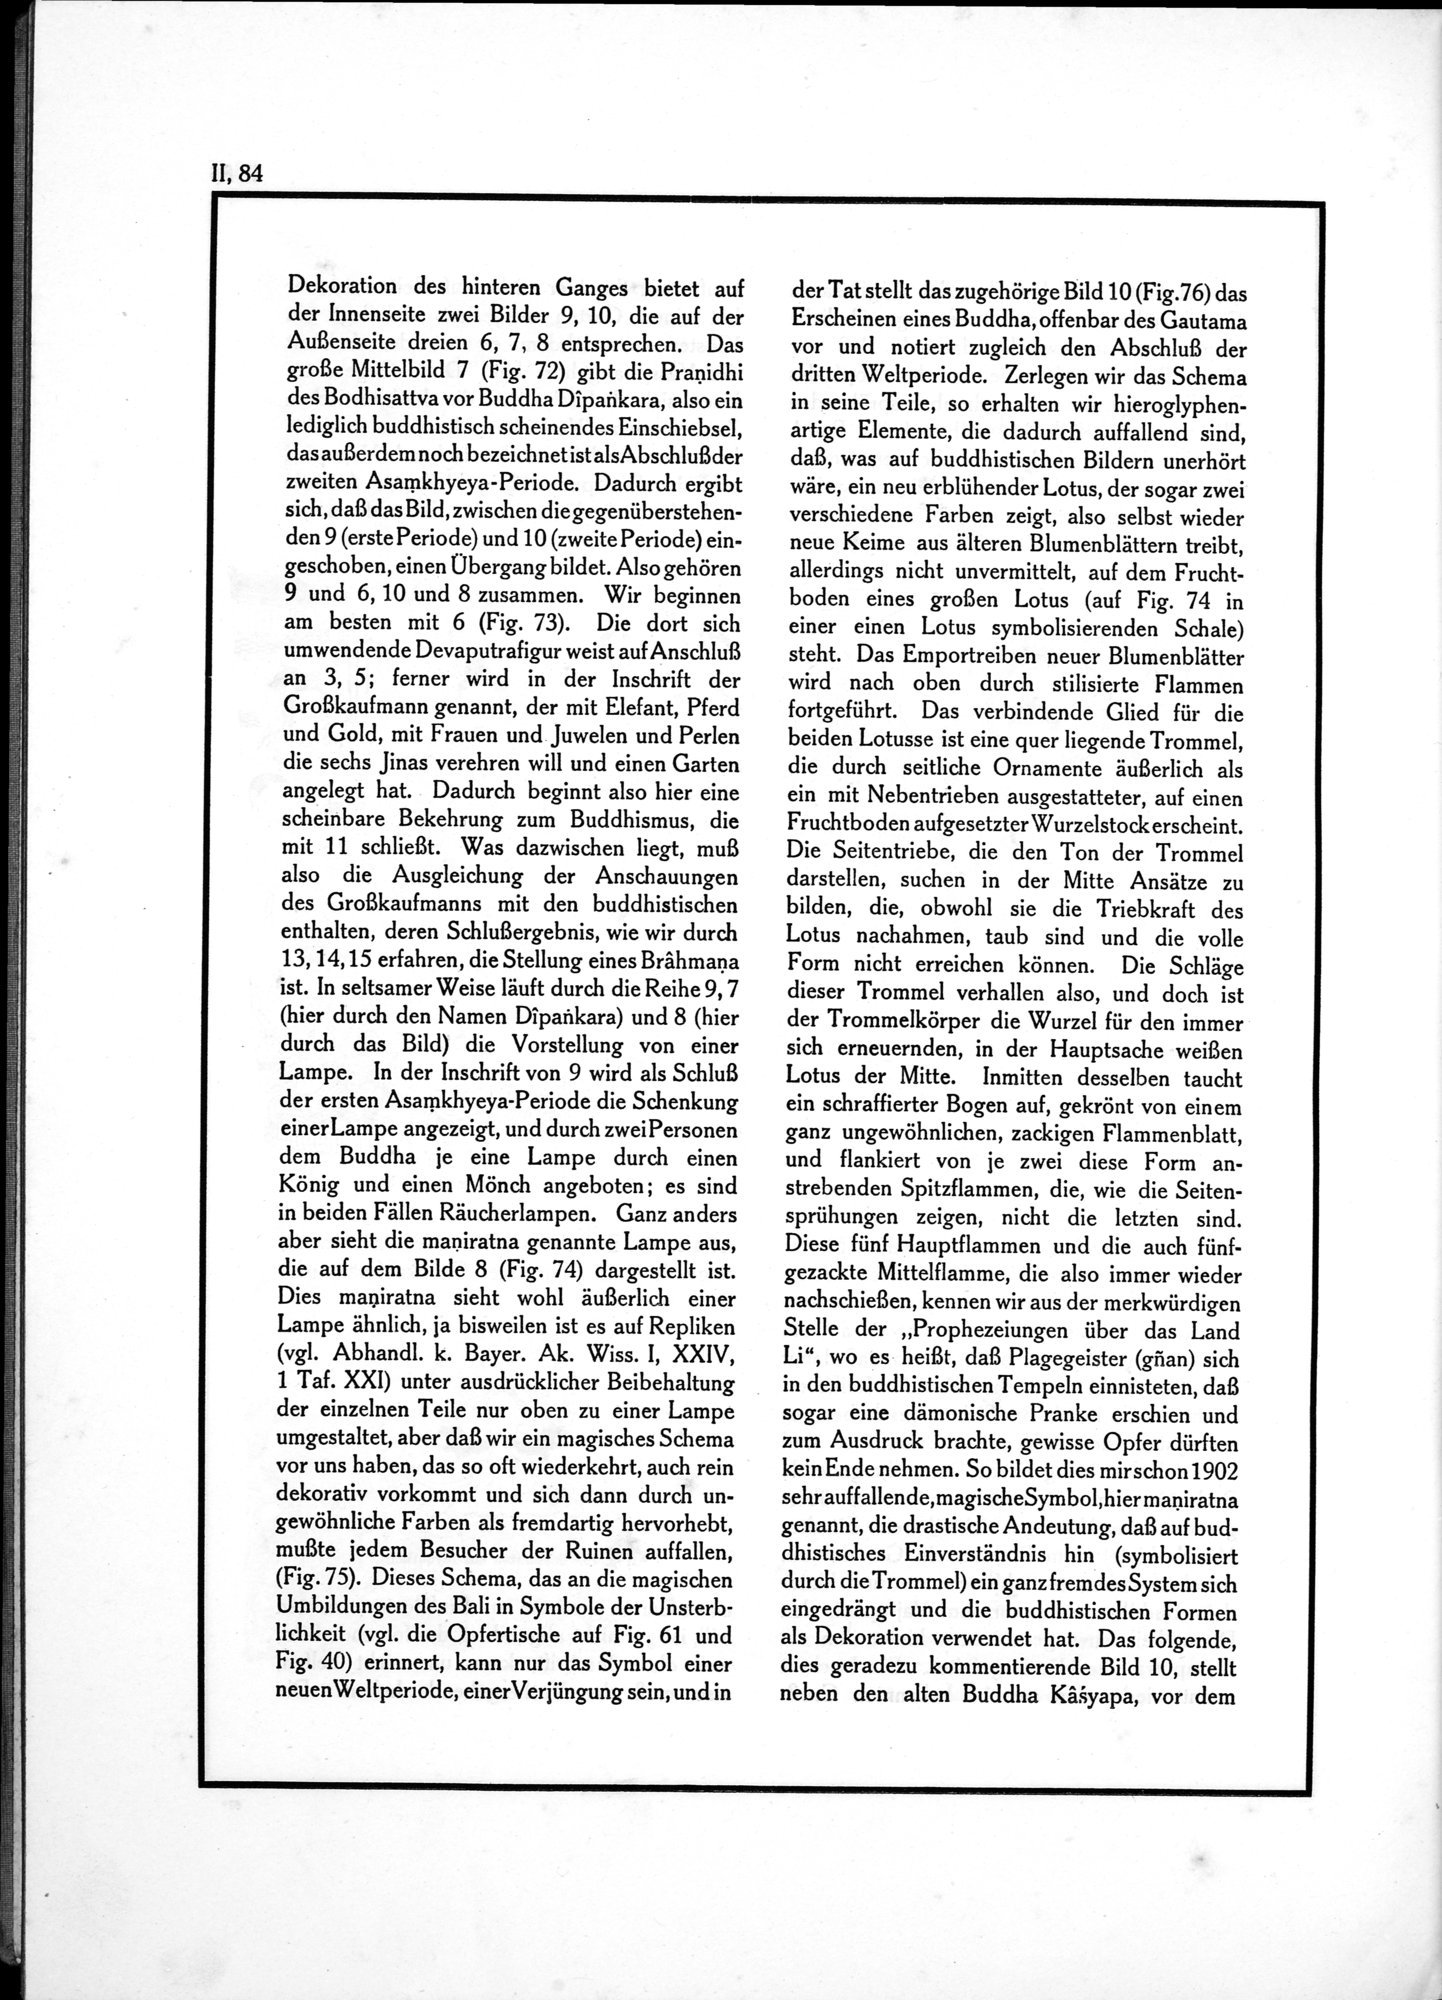 Die Teufel des Avesta und Ihre Beziehungen zur Ikonographie des Buddhismus Zentral-Asiens : vol.1 / Page 540 (Grayscale High Resolution Image)